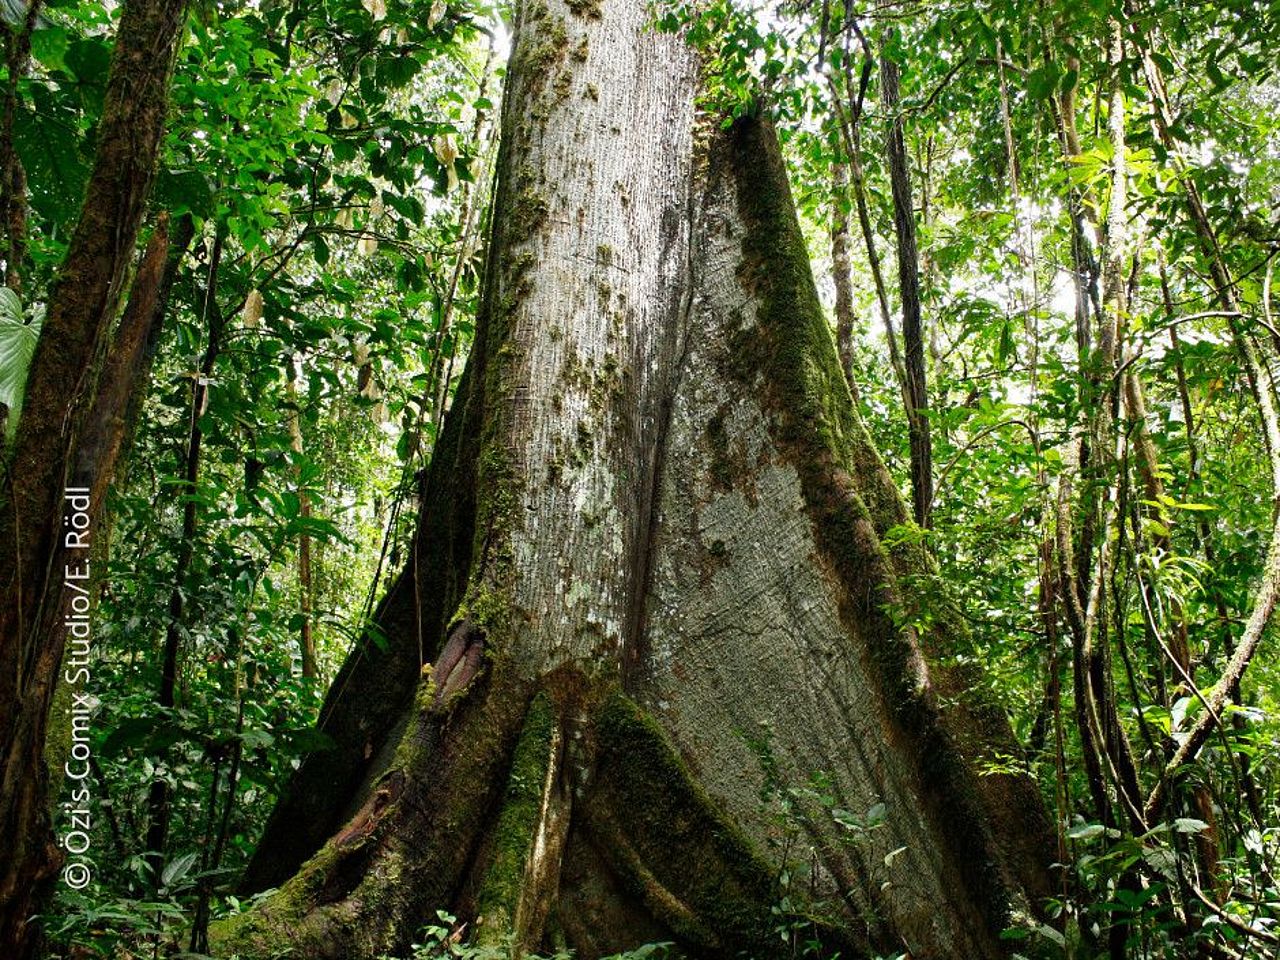 Die Erkenntnisse fließen auch in unsere Regenwaldschutzprojekte ein, z.B. bei der Entwicklung innovativer Finanzierungsmechanismen für Klima-, Wald- und Biodiversitätsschutz. ©Özi's Comix Studio/Elisa Rödl